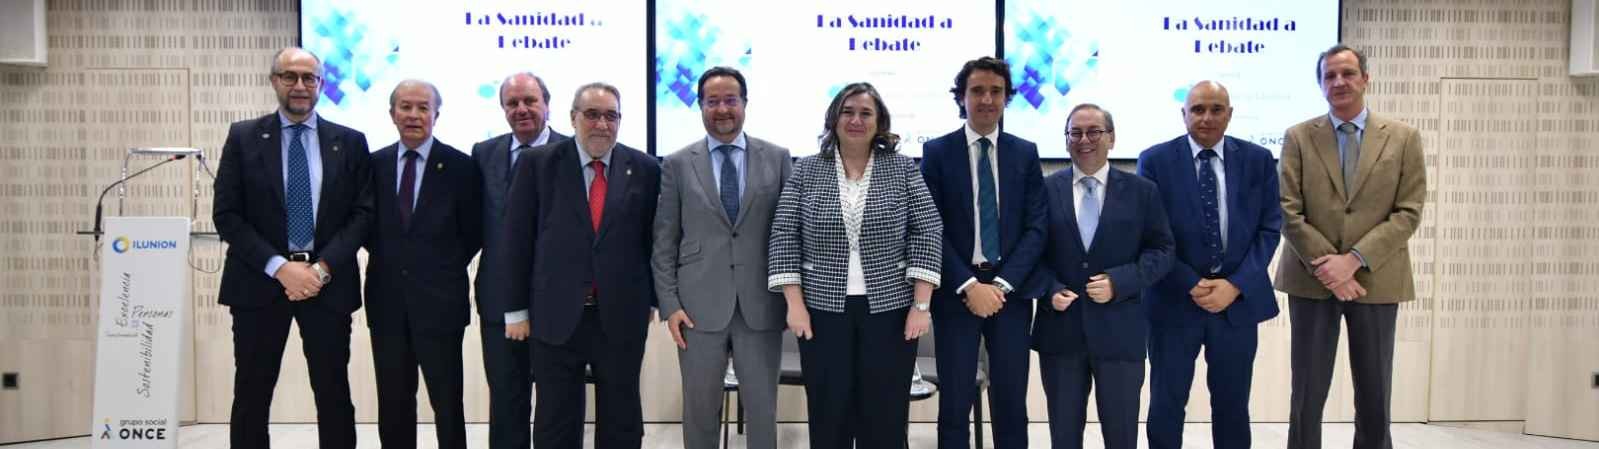 Escudero recalca la necesidad de fondos europeos para garantizar servicios sanitarios de calidad